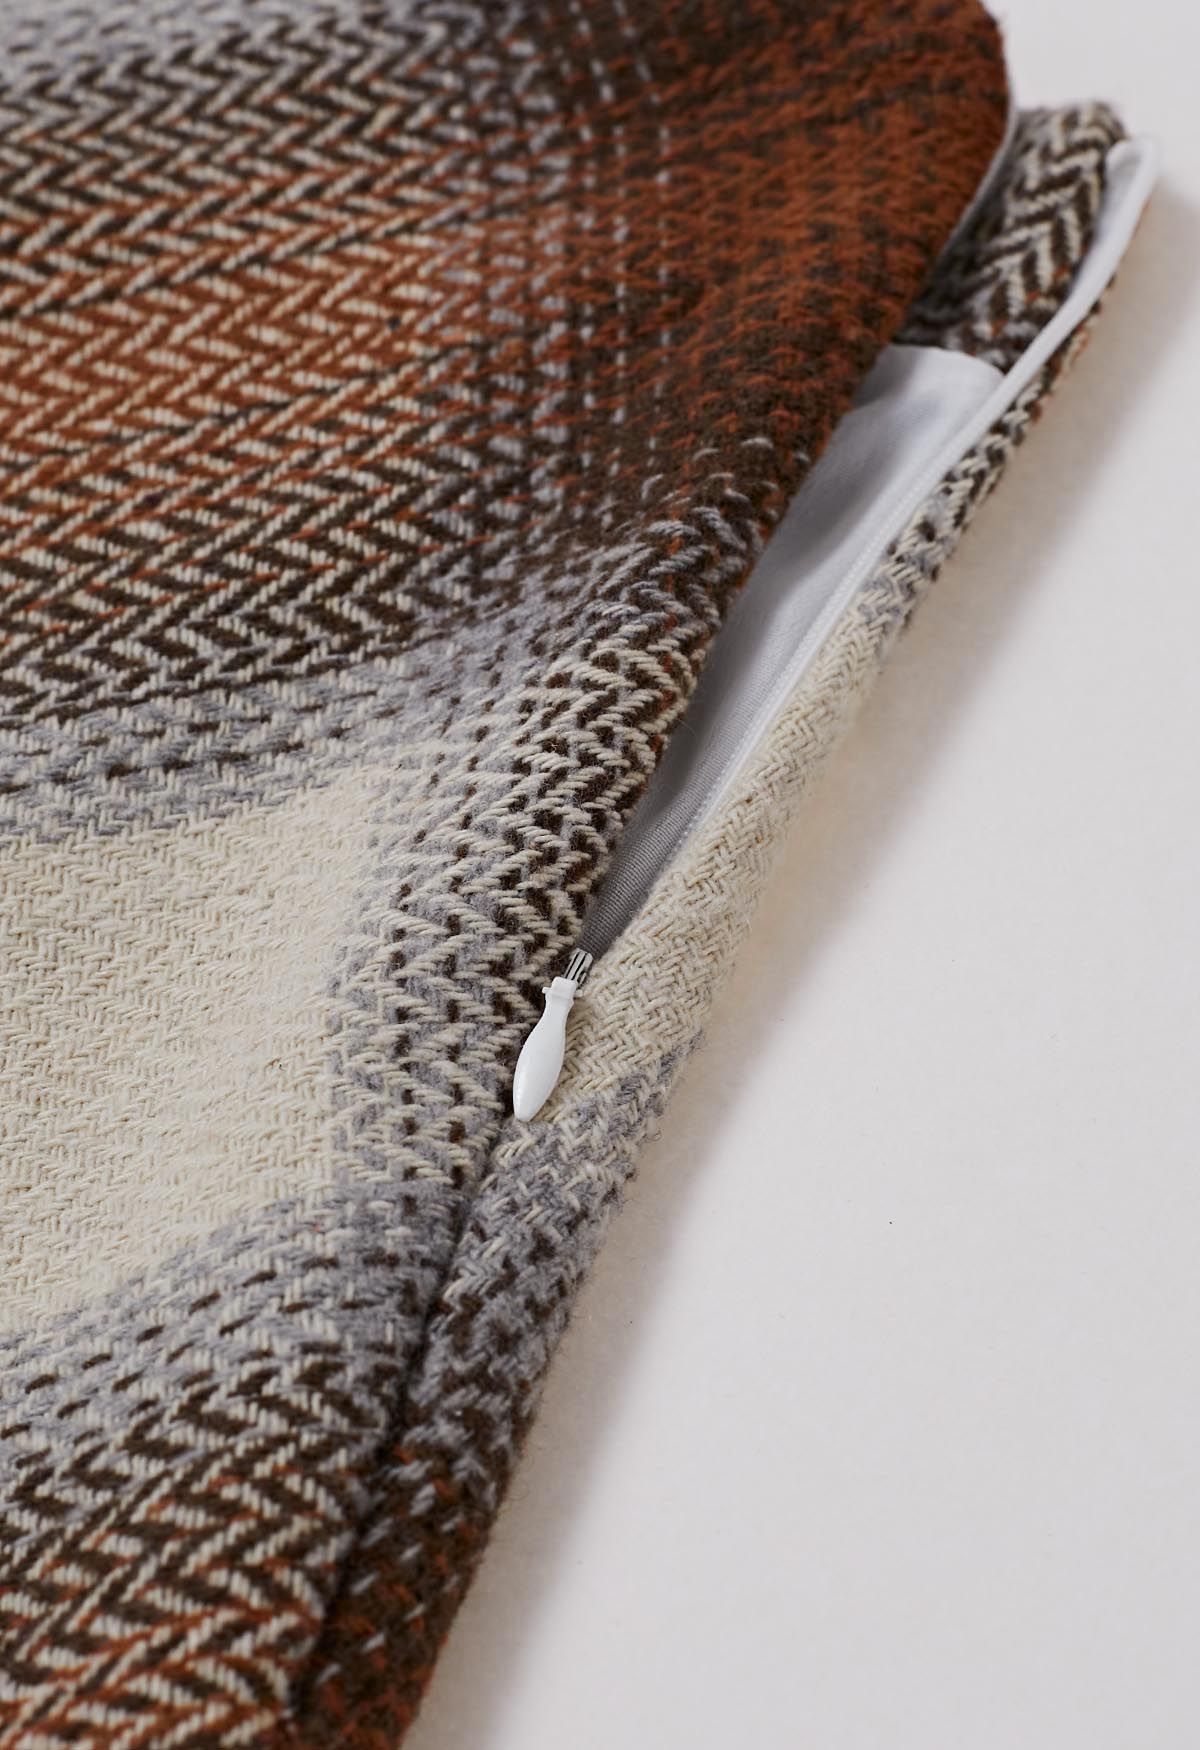 Exquisita minifalda de mezcla de lana con estampado de cuadros